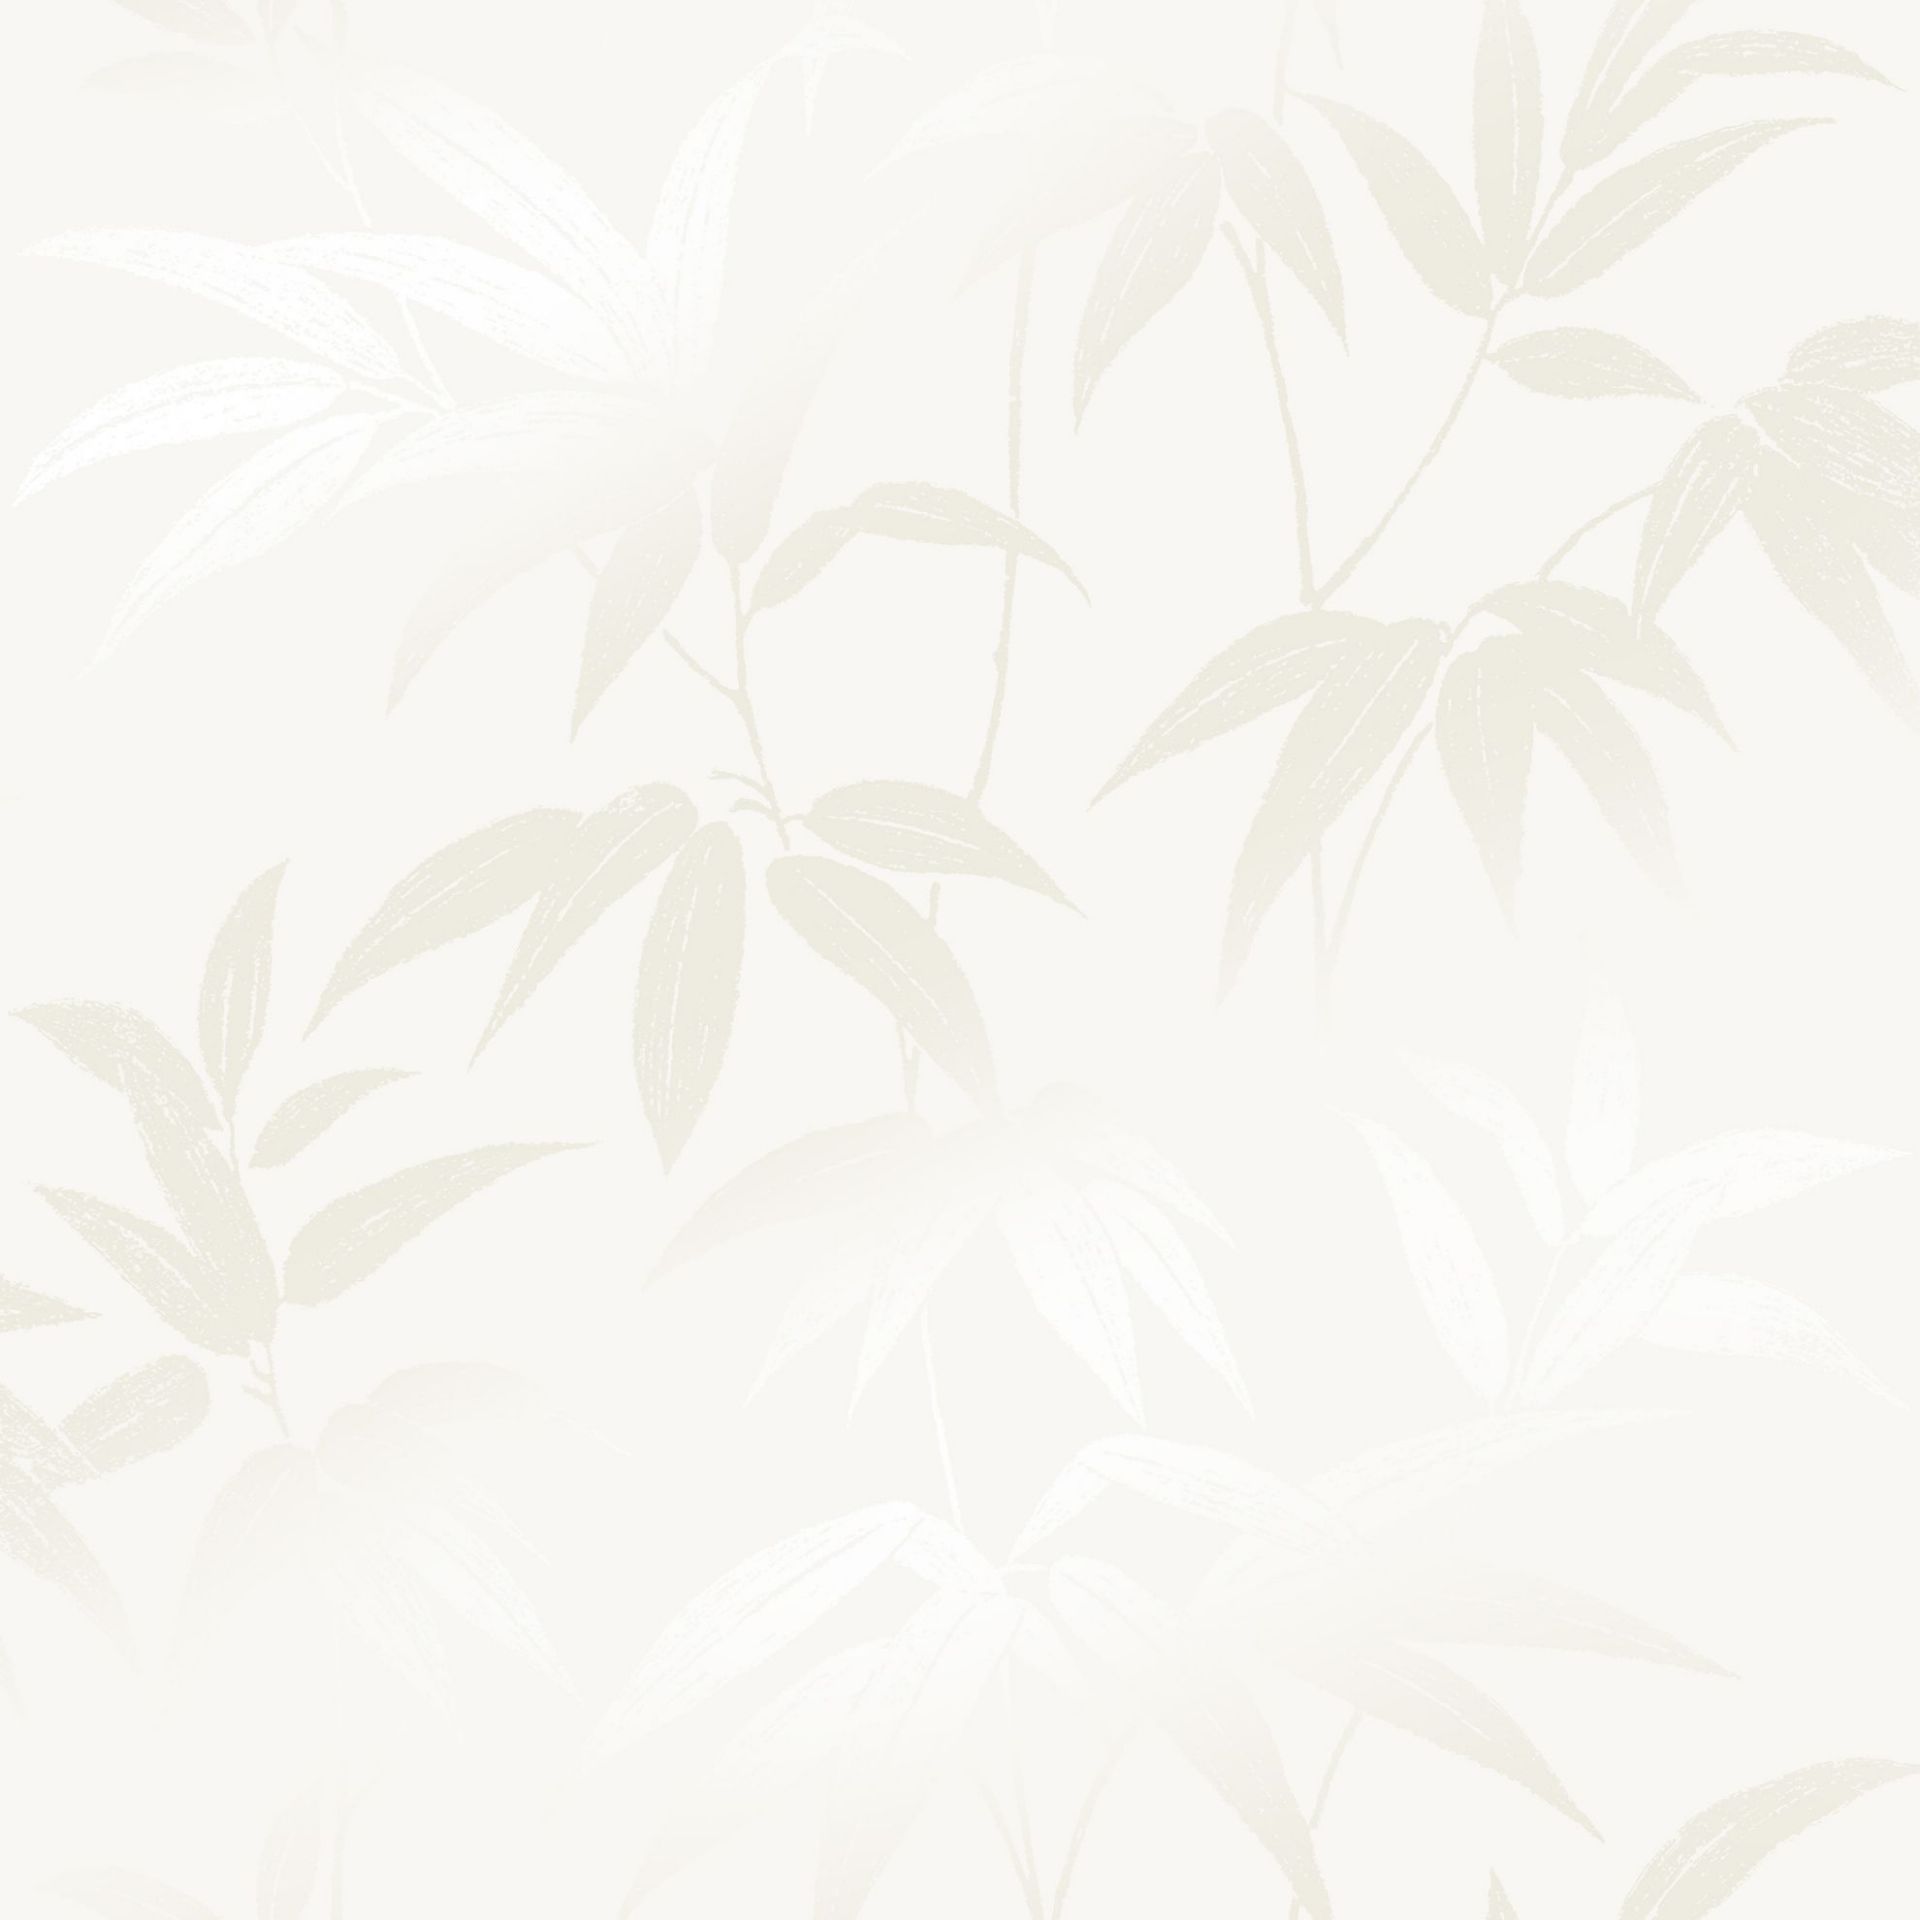 Nærbilde av Lycke Bambu 1. En vakker og beroligende tapet med sølvblanke blader av bambus mot en hvit bunn.